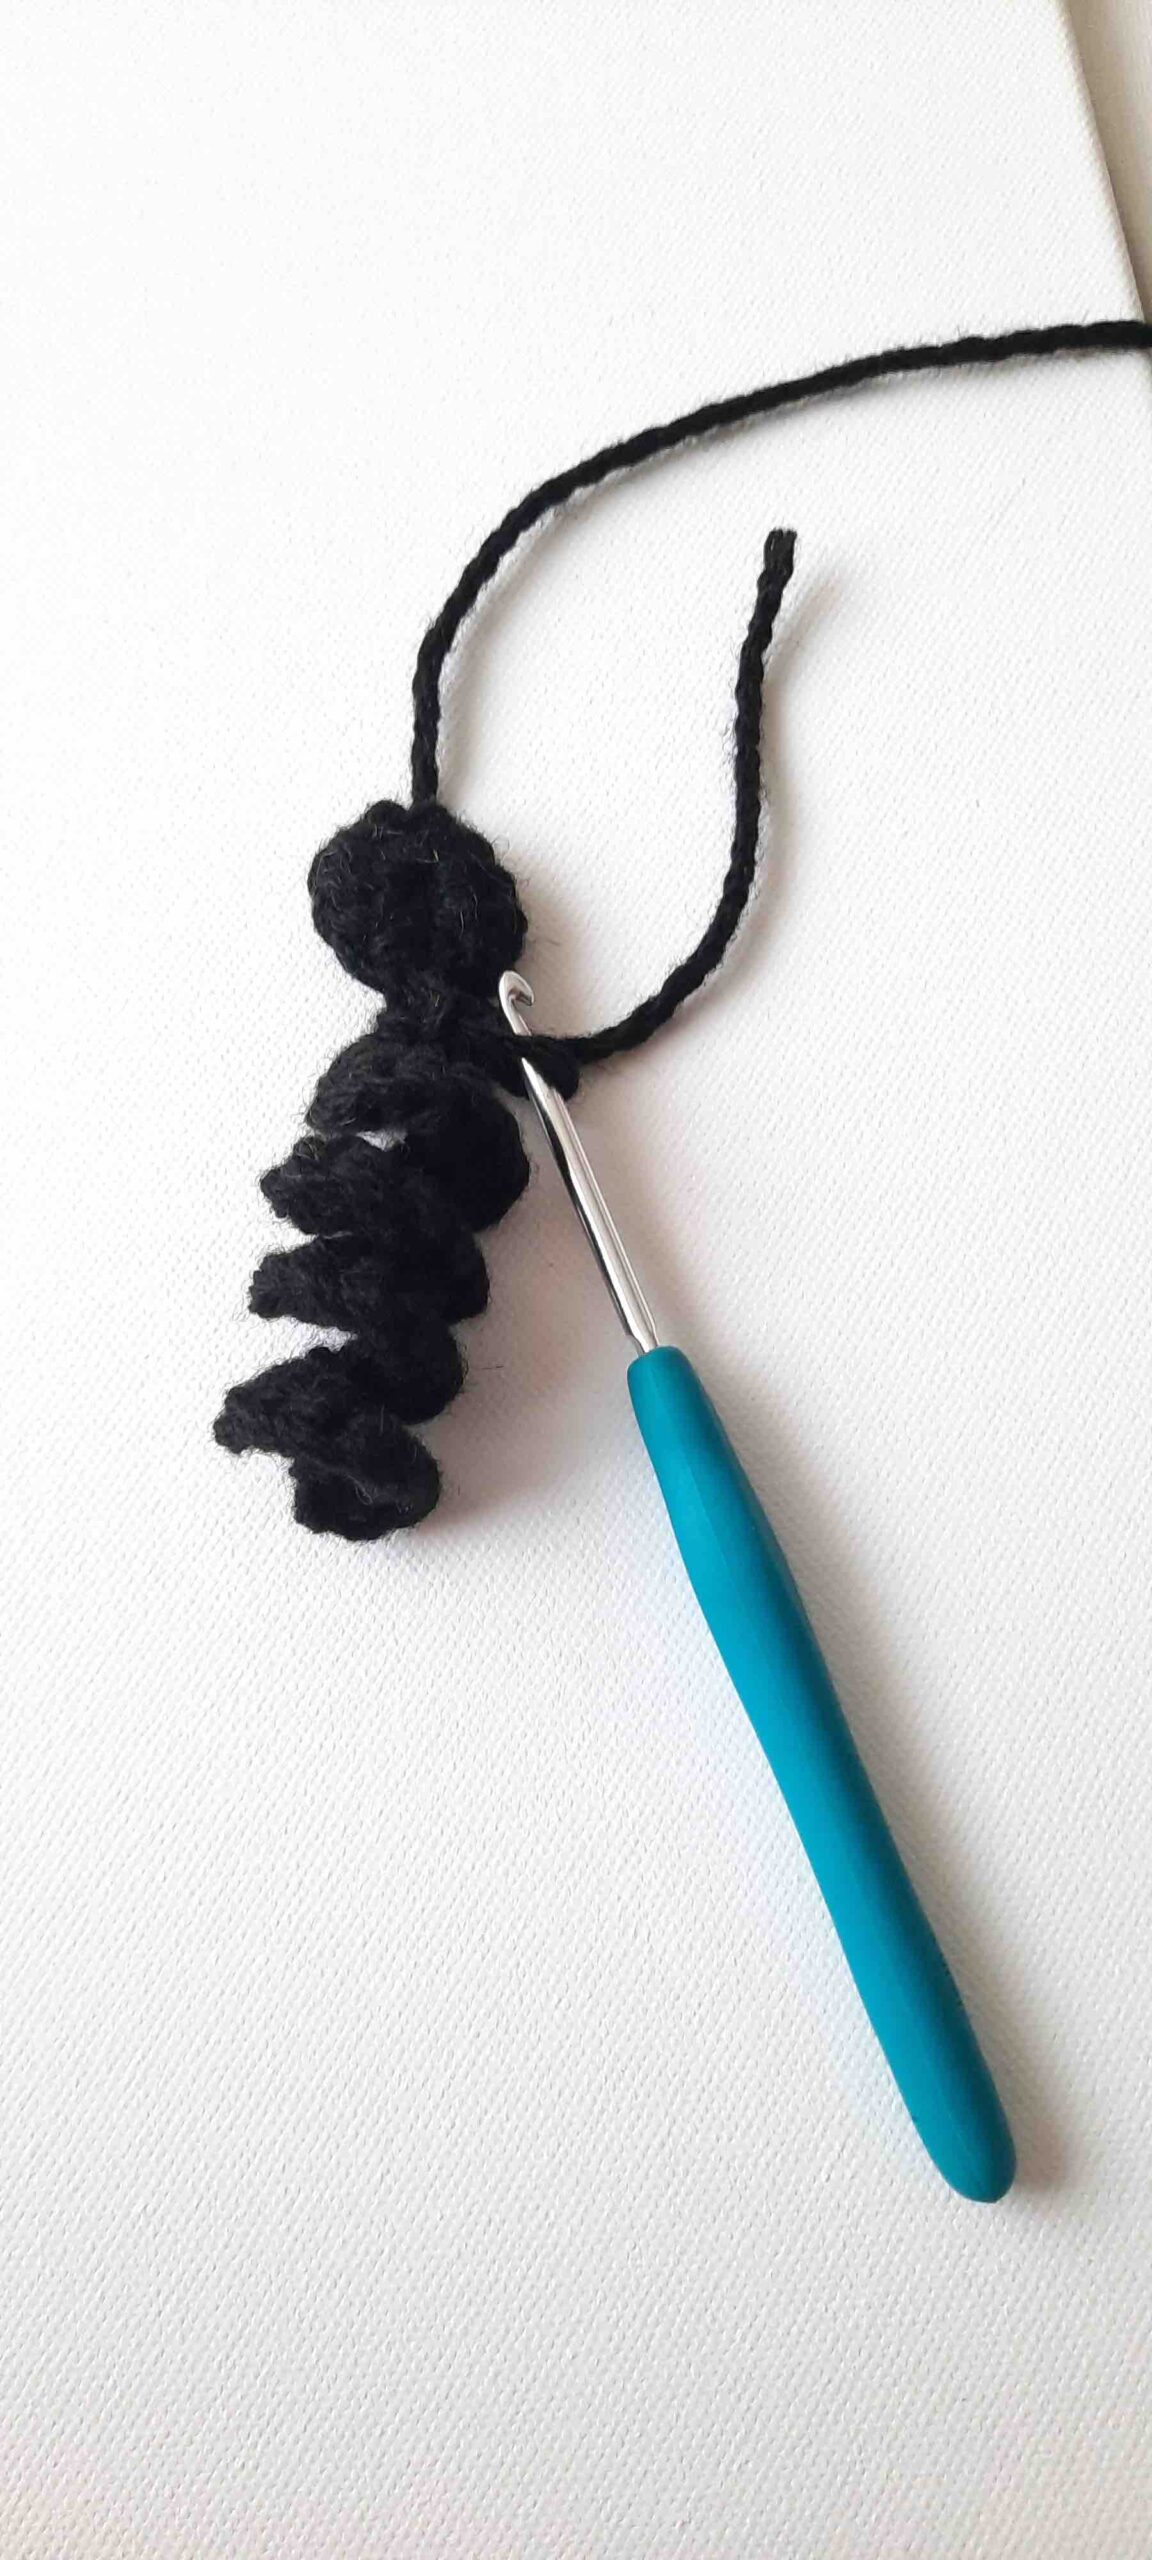 crochet black cat pattern easy